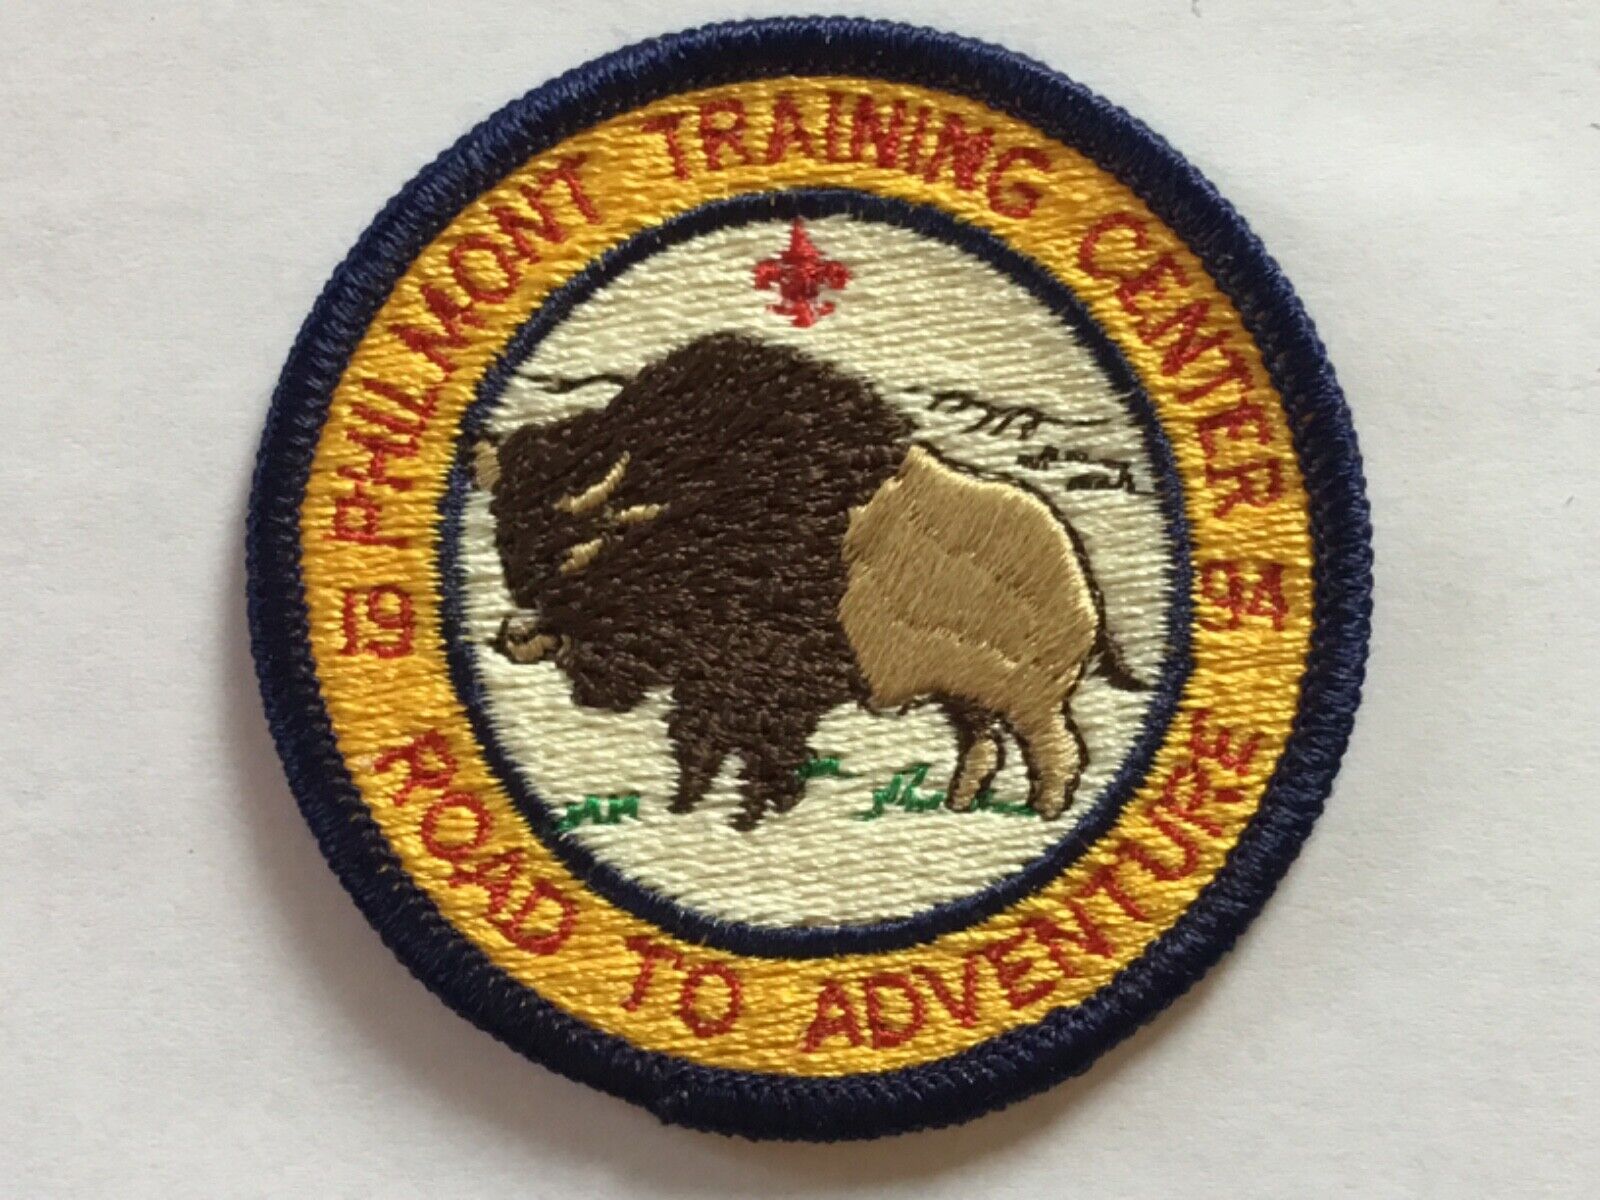 1994 Philmont Scout Ranch Scout Adventure patch